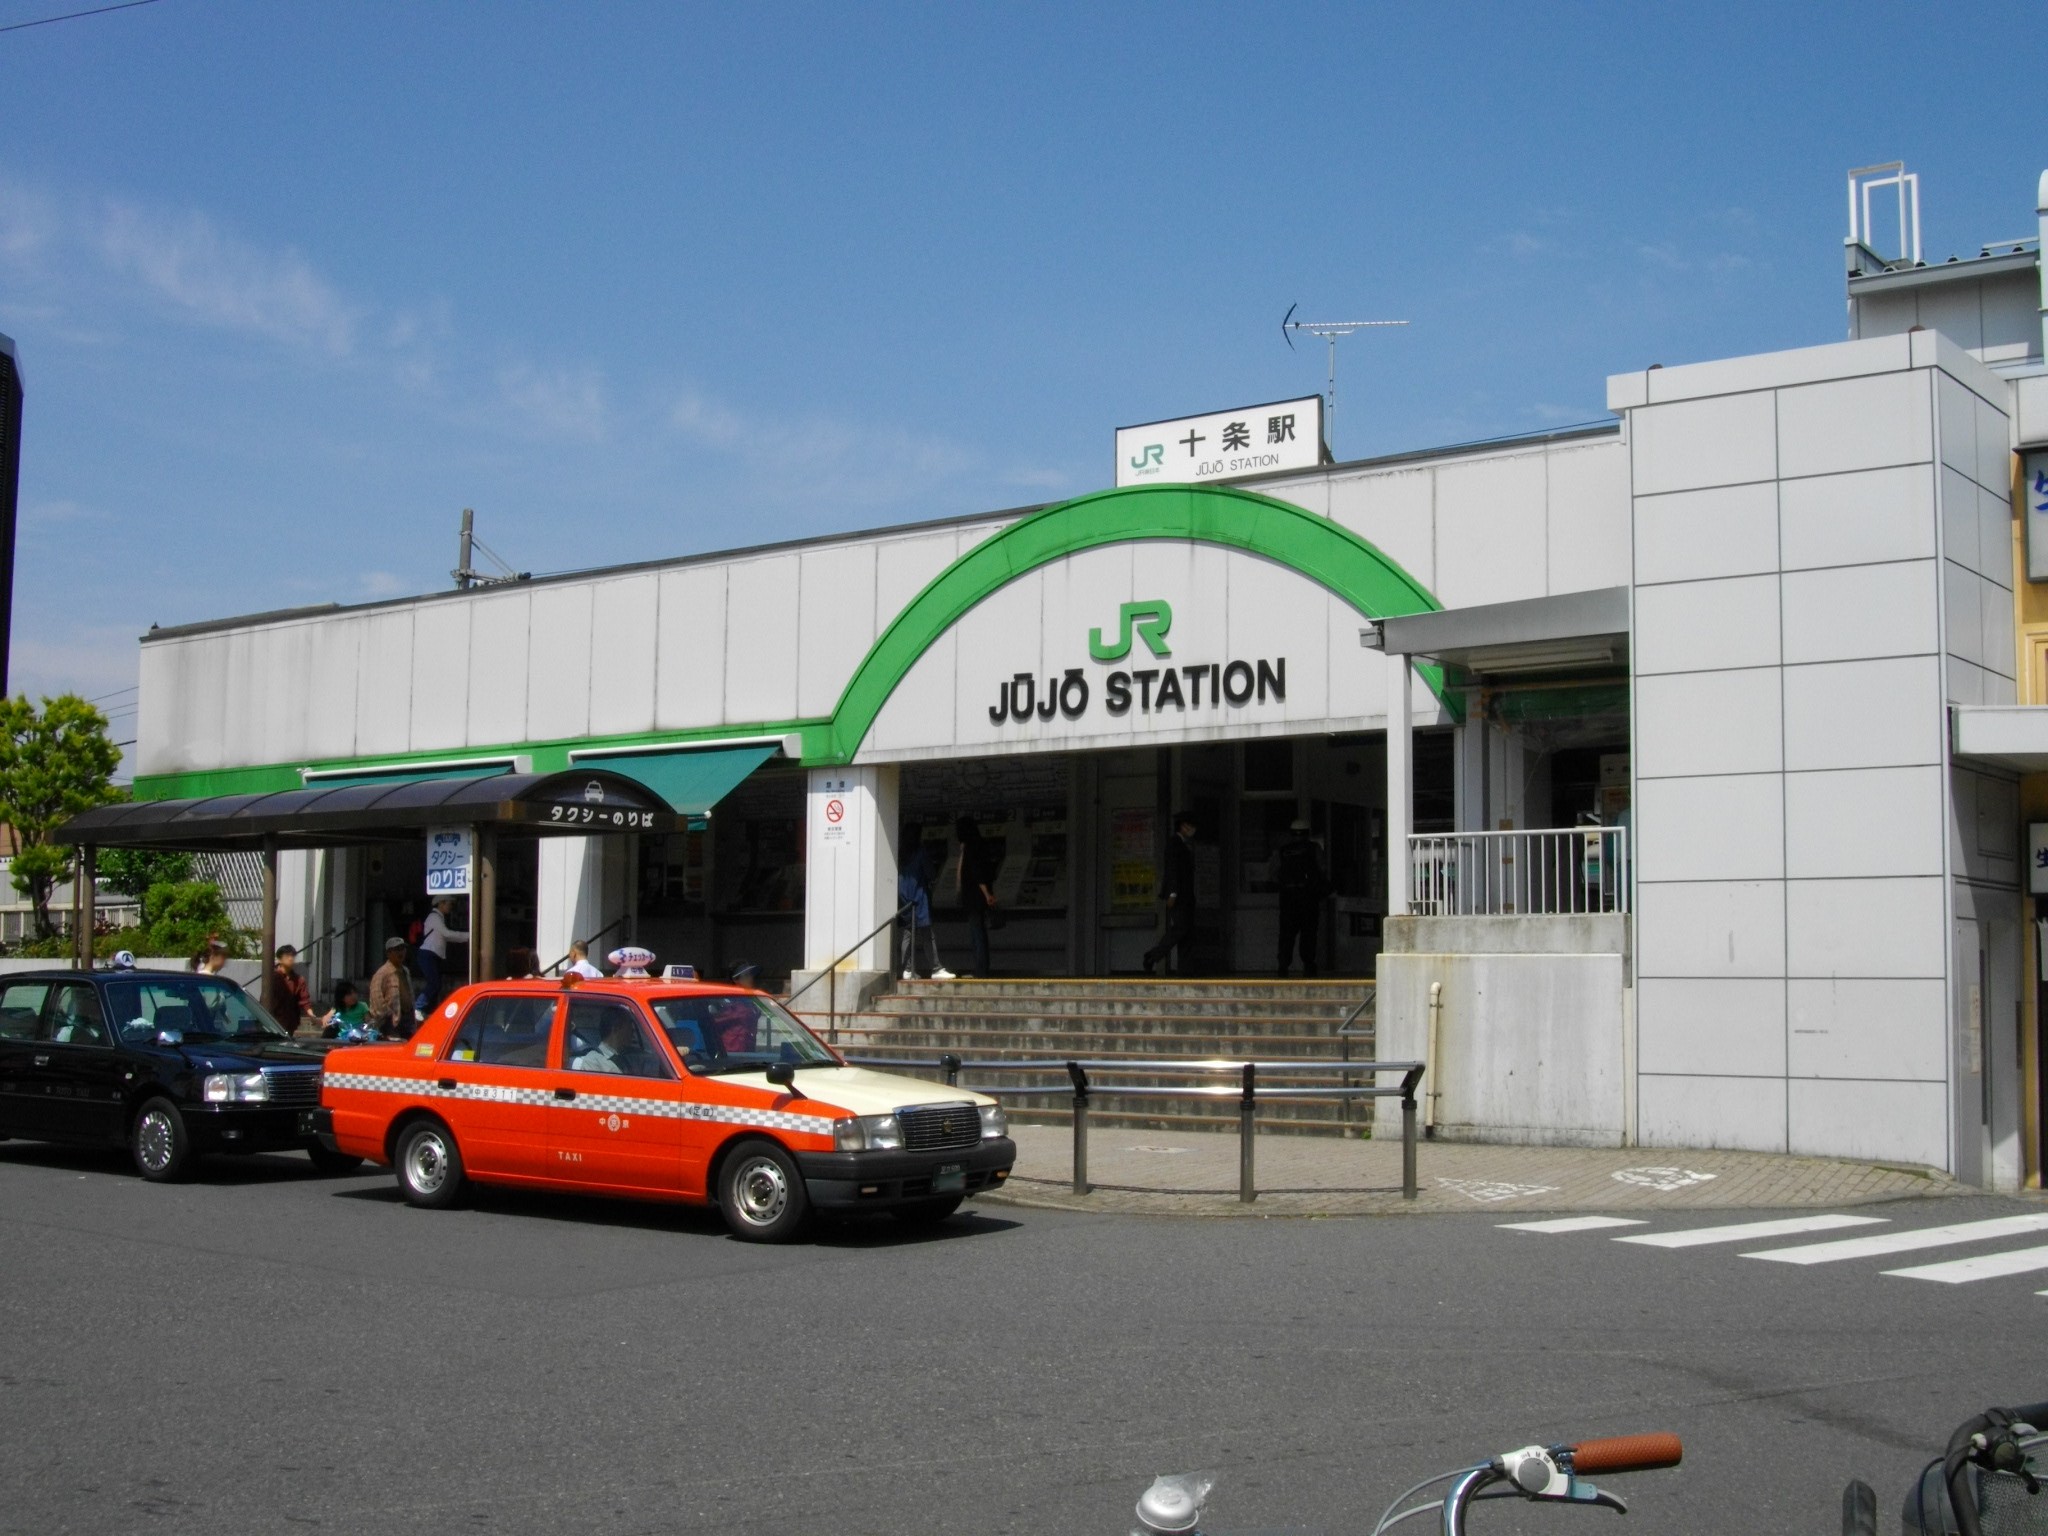 주조 역 (도쿄도)